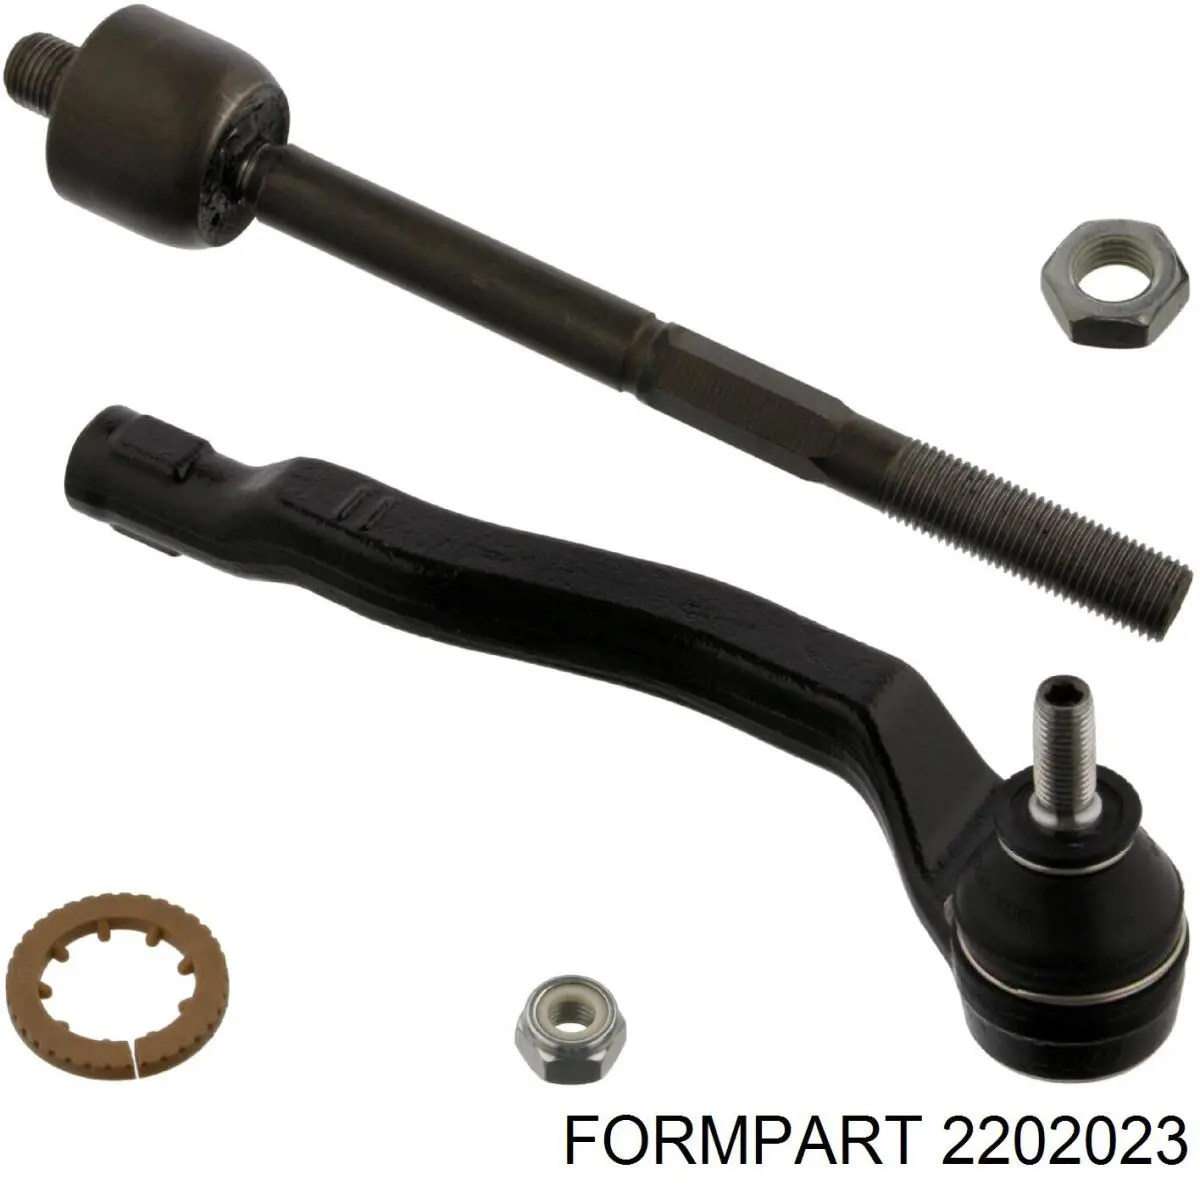 2202023 Formpart/Otoform rótula barra de acoplamiento exterior